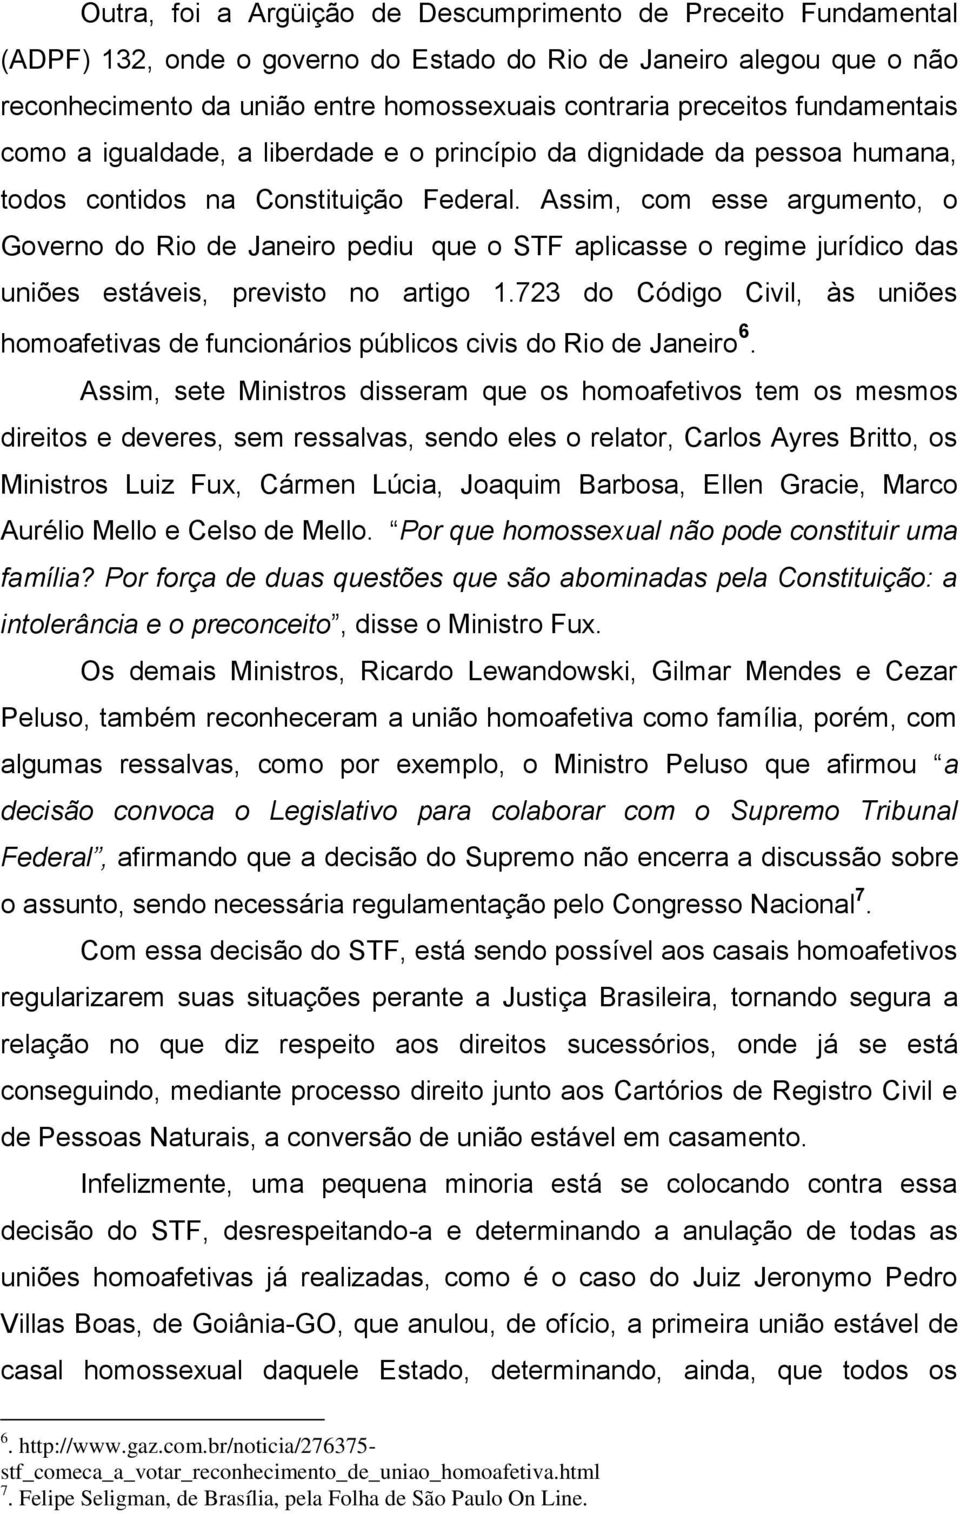 Assim, com esse argumento, o Governo do Rio de Janeiro pediu que o STF aplicasse o regime jurídico das uniões estáveis, previsto no artigo 1.